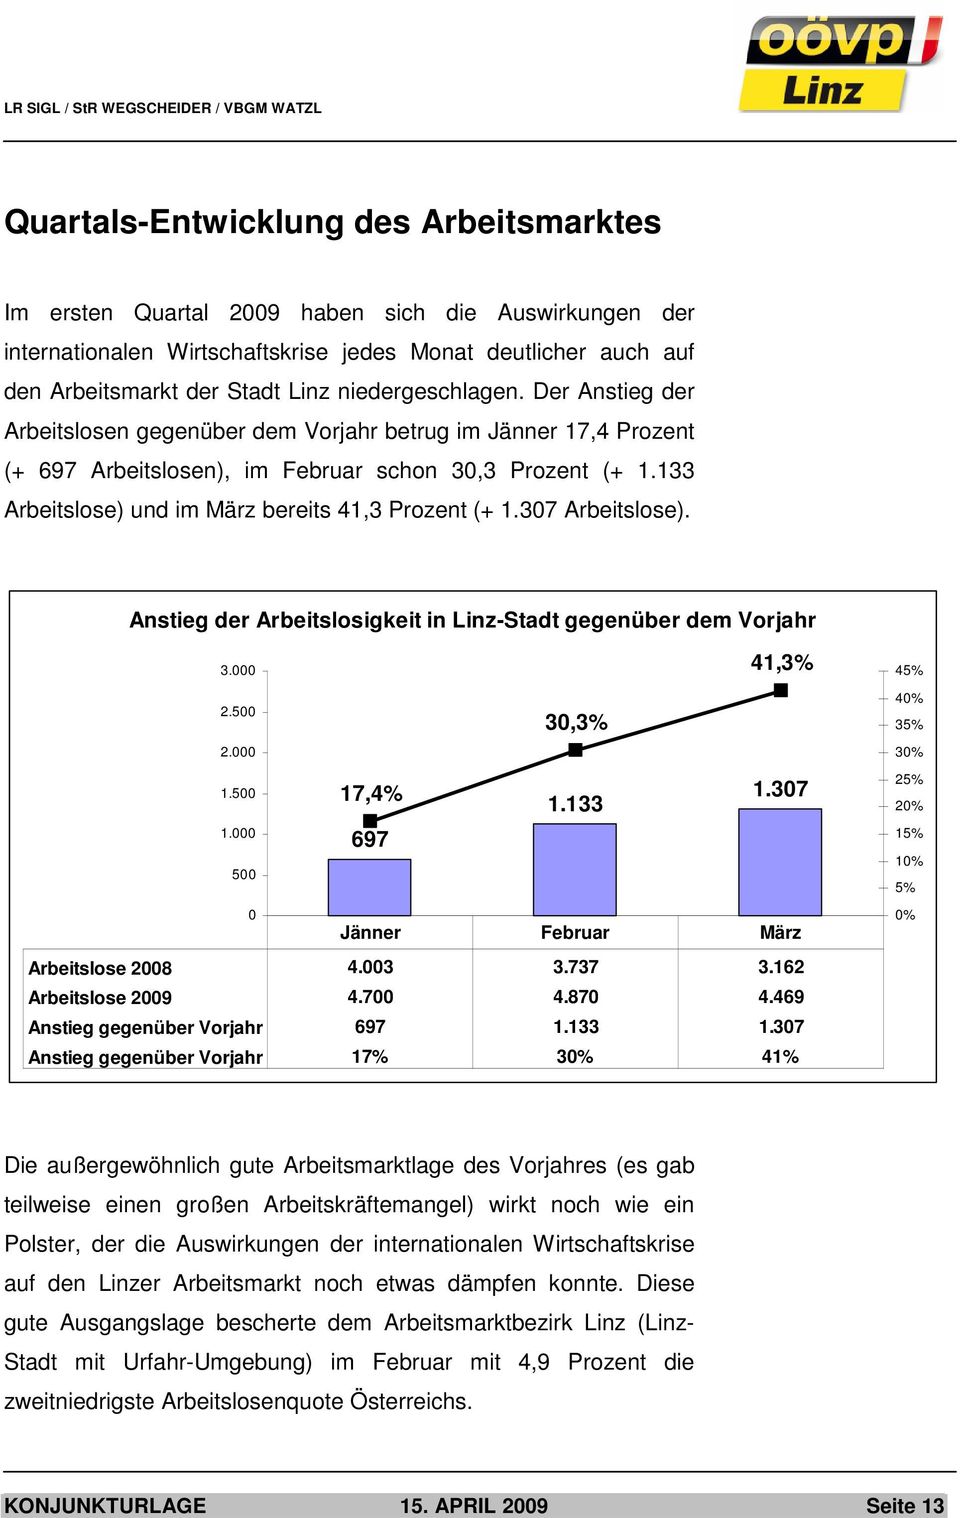 133 Arbeitslose) und im März bereits 41,3 Prozent (+ 1.307 Arbeitslose). Anstieg der Arbeitslosigkeit in Linz-Stadt gegenüber dem Vorjahr 3.000 2.500 2.000 1.500 1.000 500 0 41,3% 30,3% 17,4% 1.133 1.